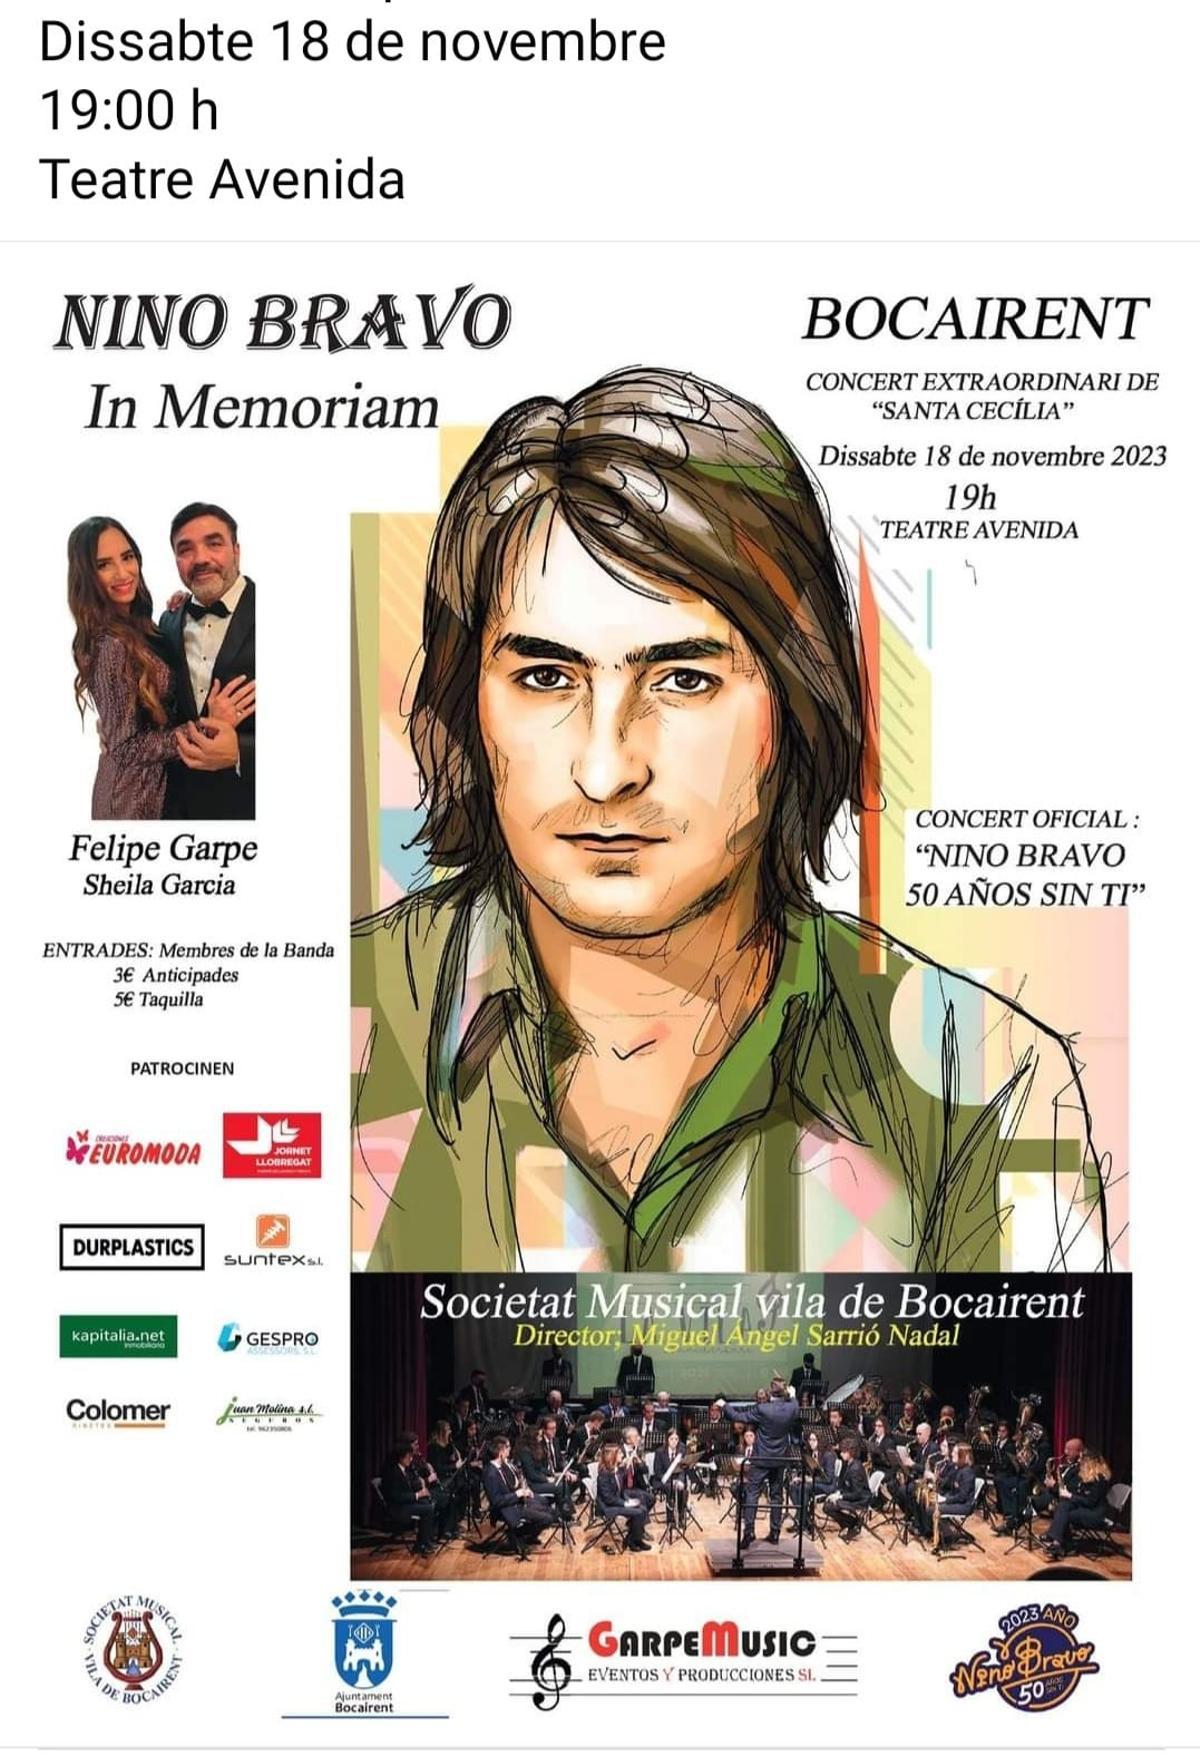 Programan un concierto monográfico sobre la obra de Nino Bravo en Bocairent